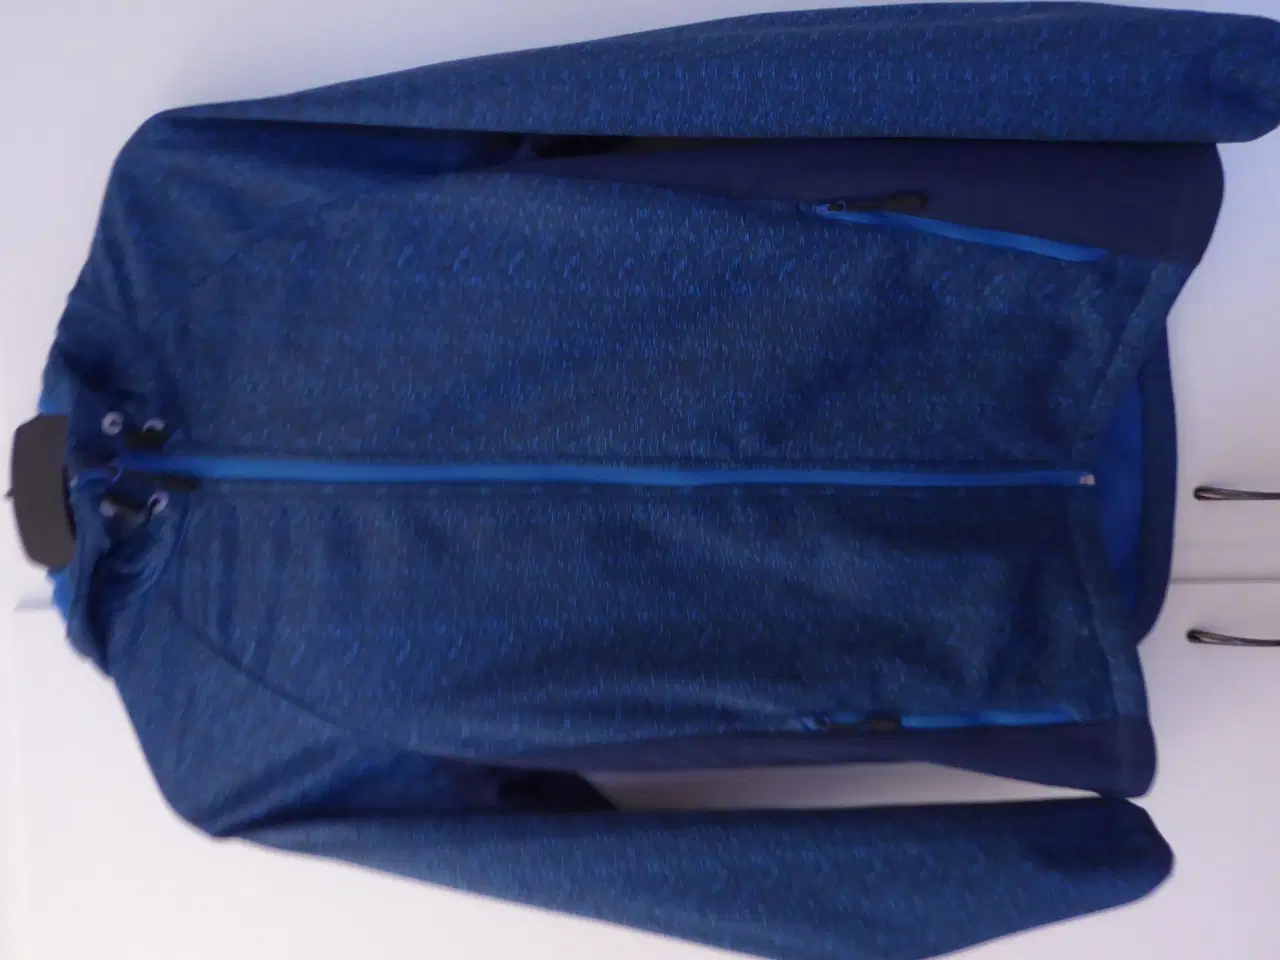 Billede 1 - Skal sælges nu -Flot softshell jakke til begge køn